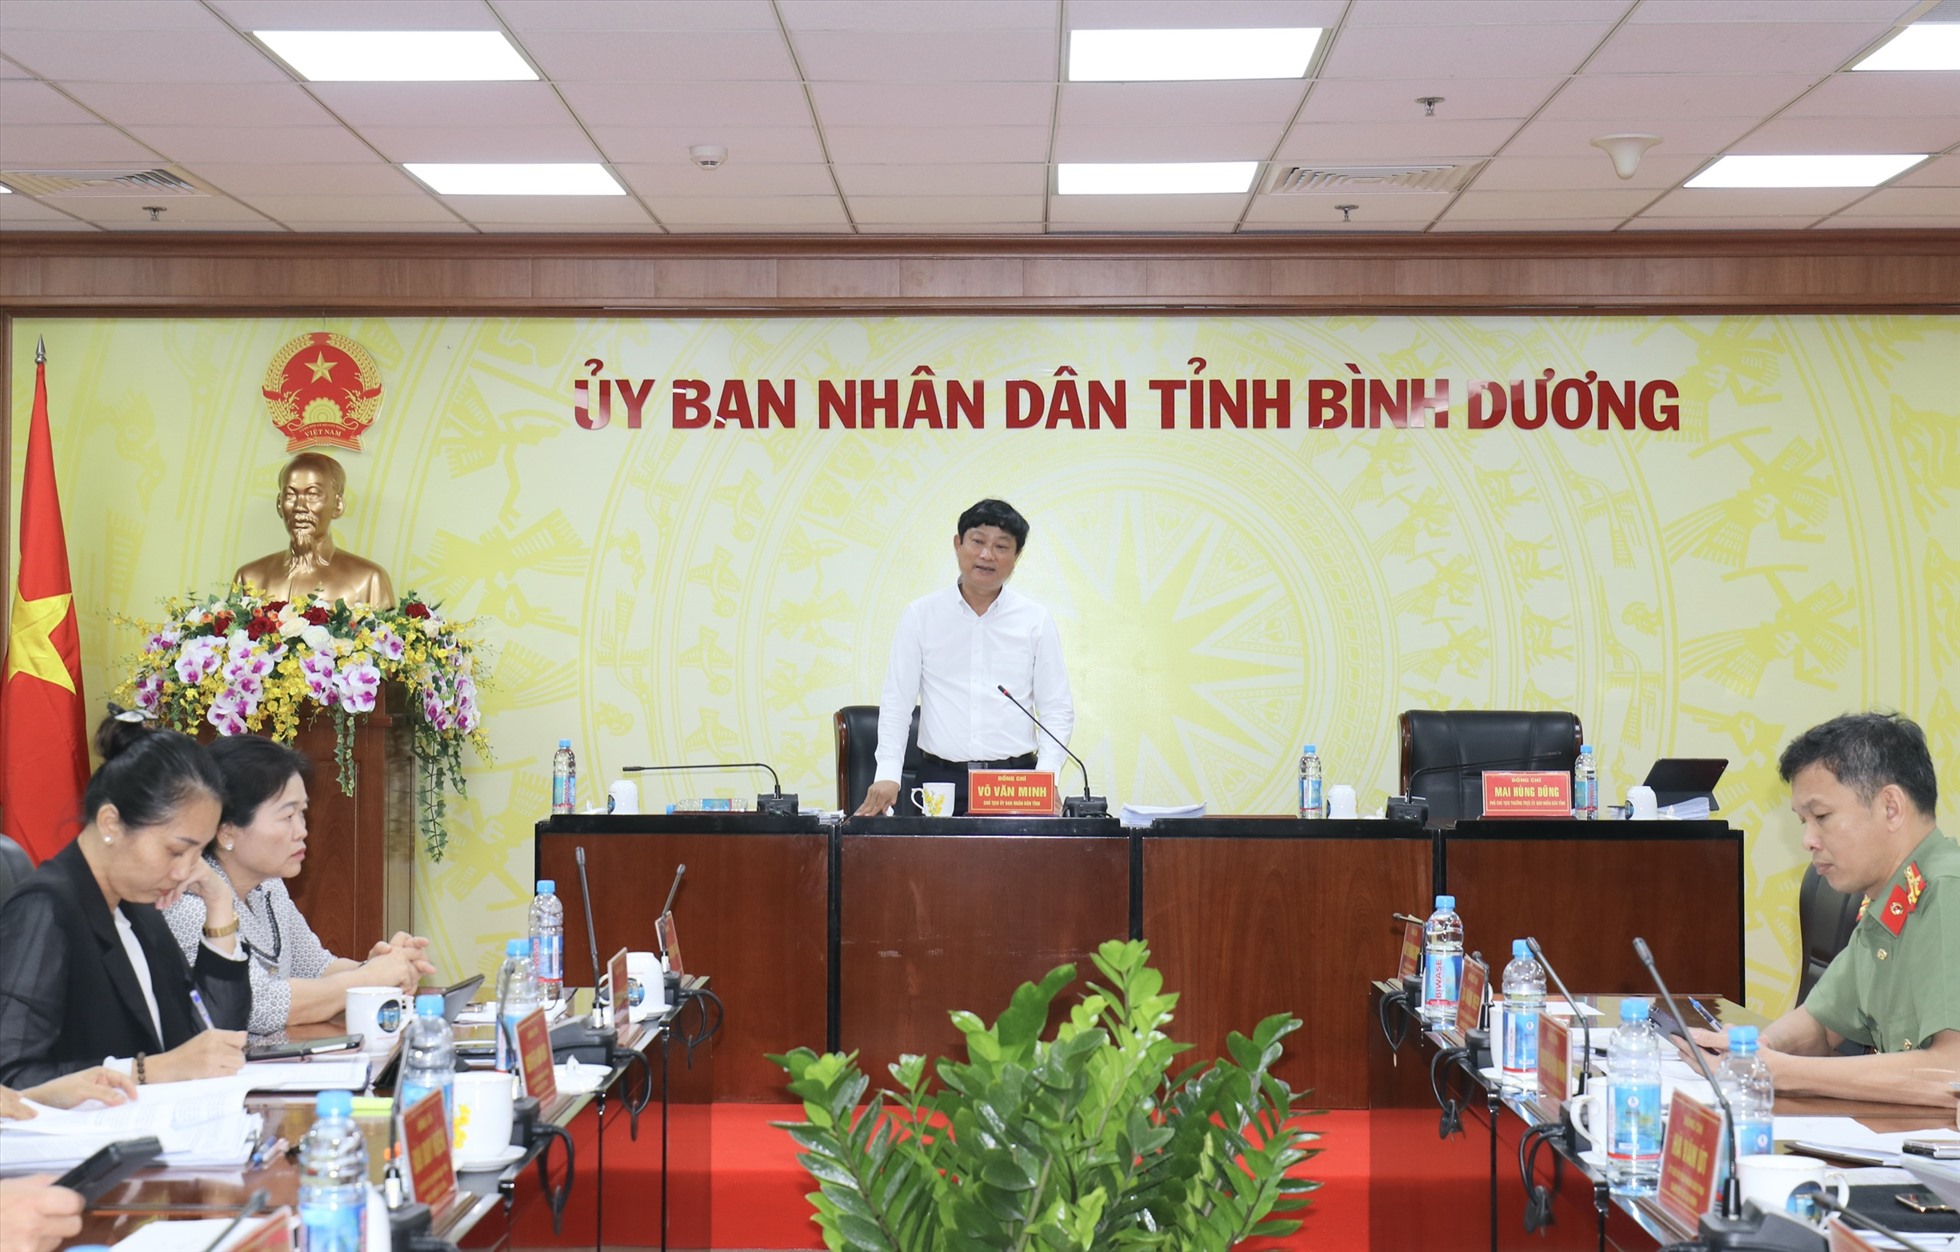 Ông Võ Văn Minh - Chủ tịch UBND tỉnh Bình Dương chỉ đạo các ngành và địa phương tập trung tháo gỡ khó khăn để doanh nghiệp thúc đẩy sản xuất hàng hóa.Ảnh: UBND BD